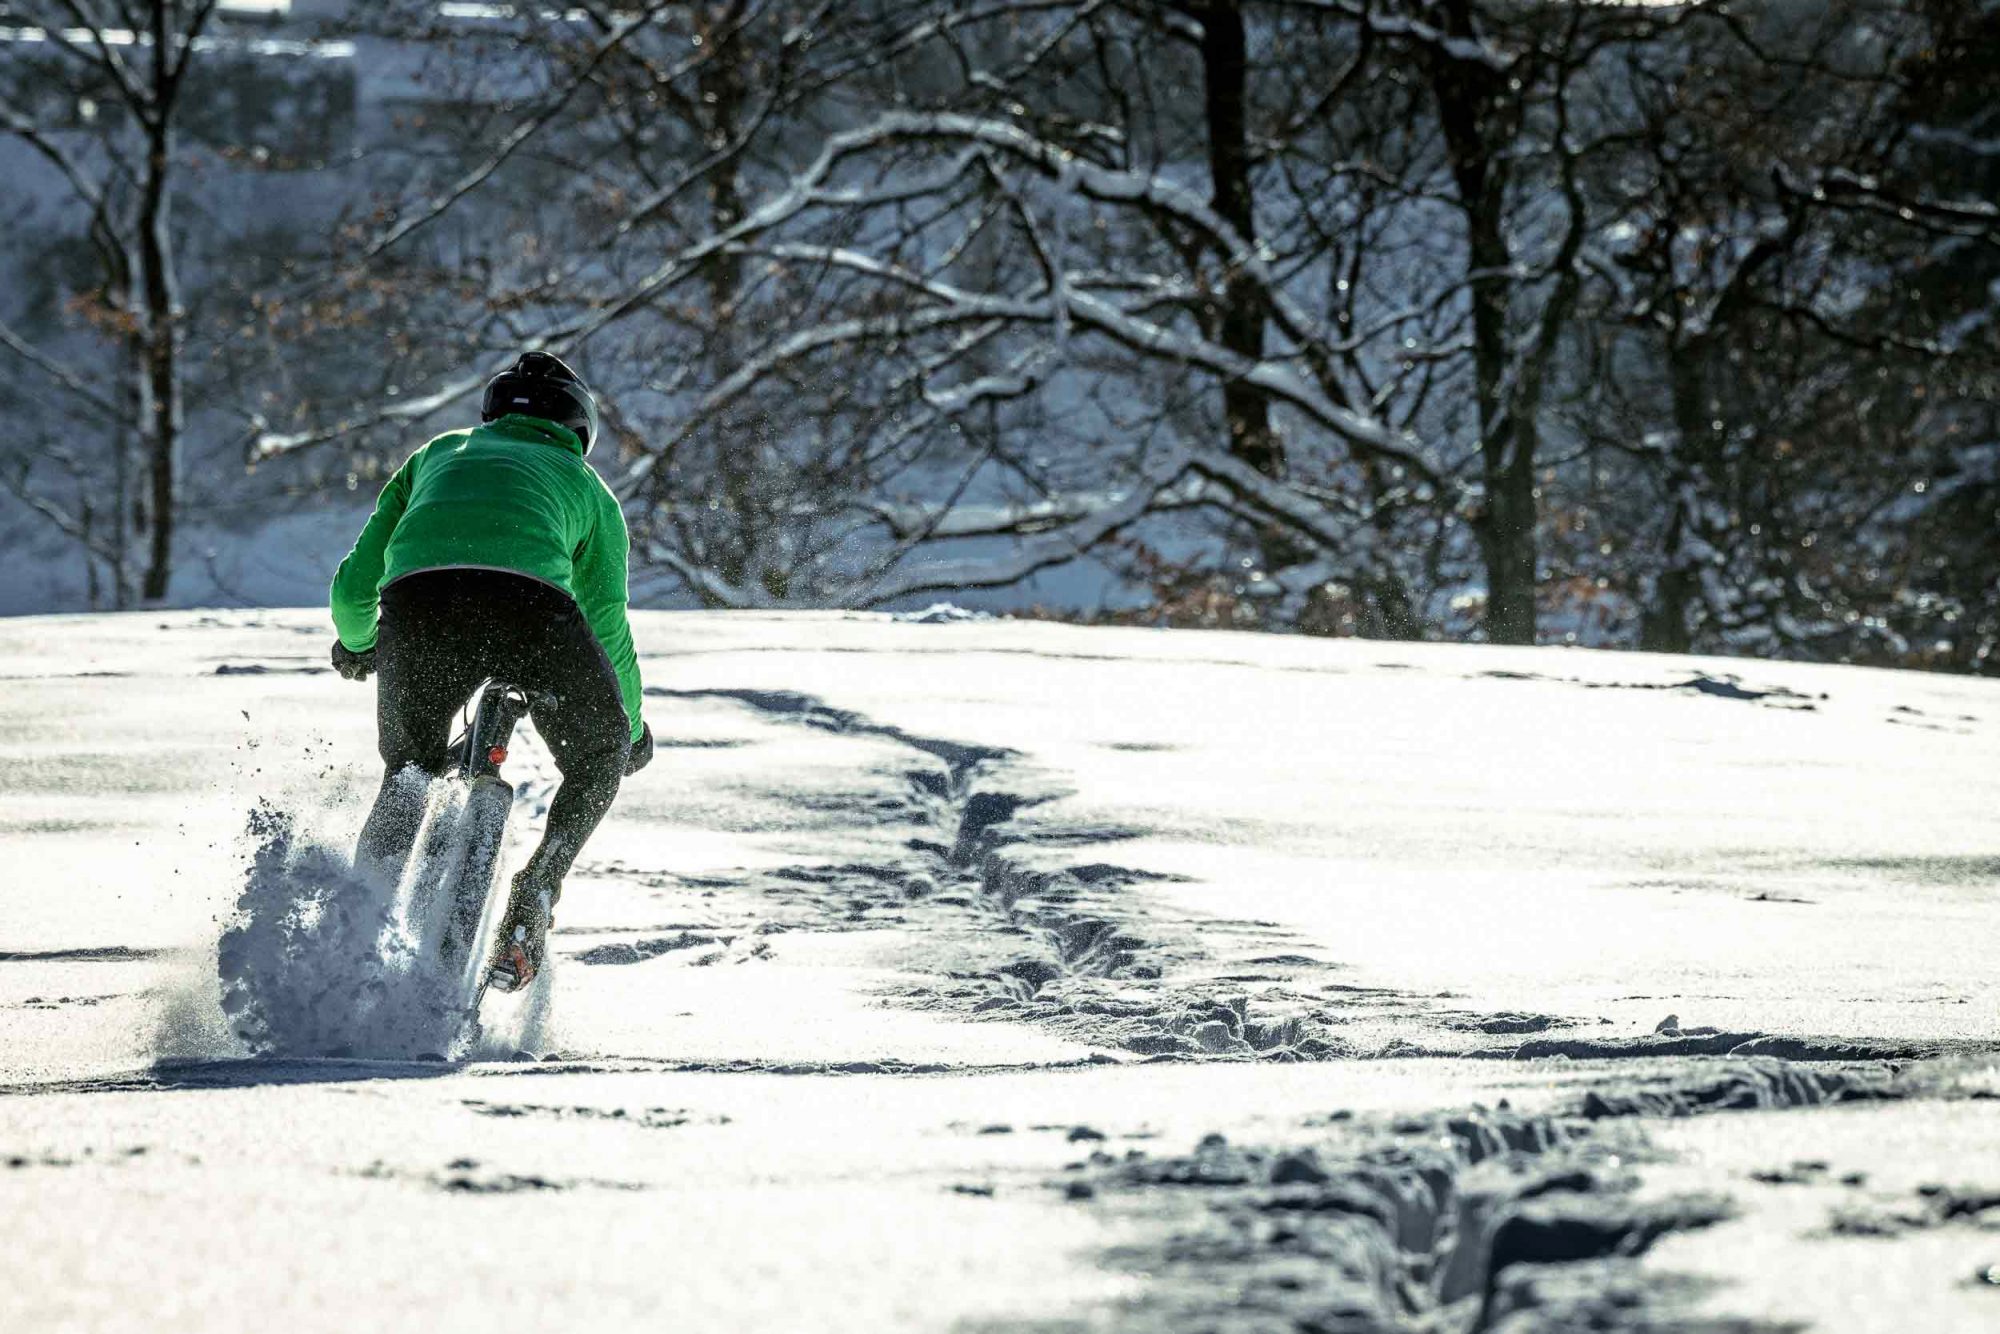 Hol das basic monster gravelbike test bike raus – es hat geschneit!